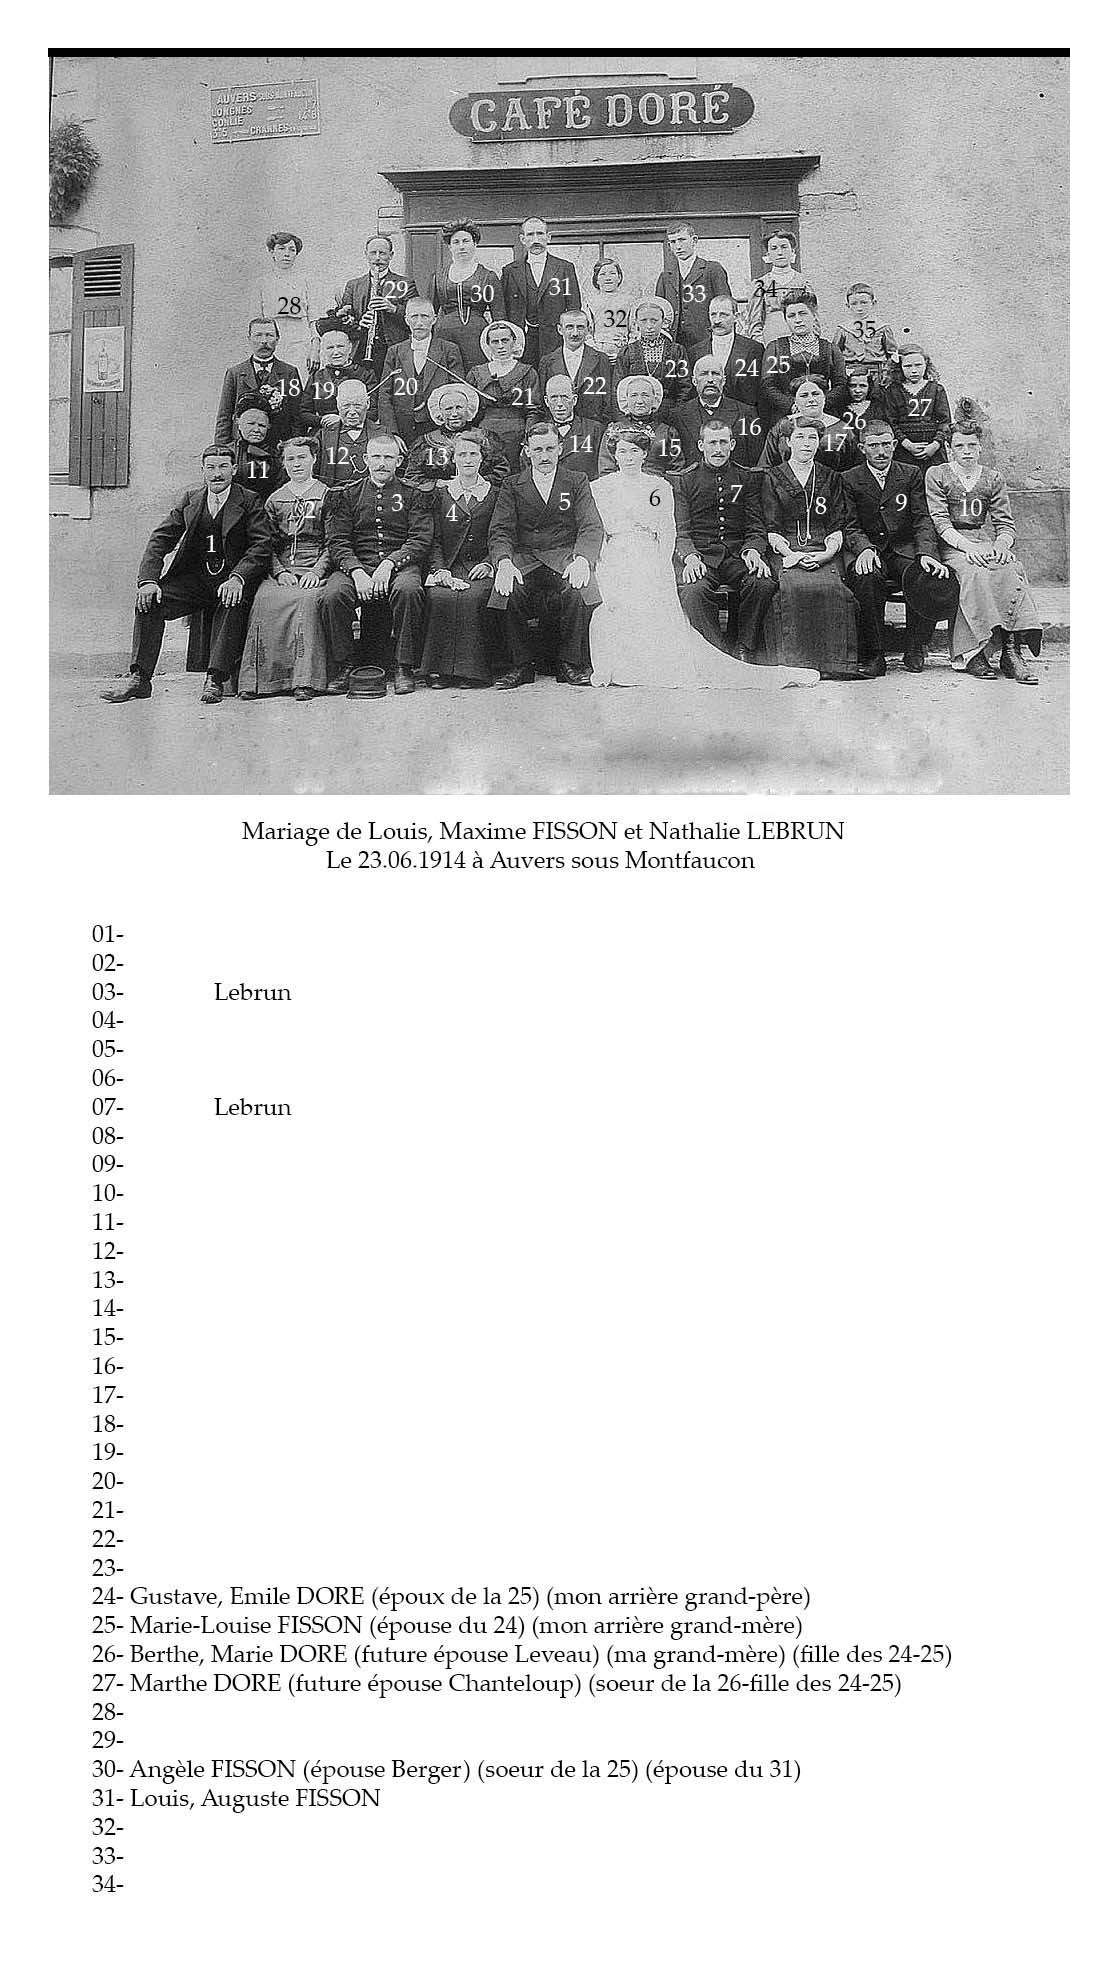 Auvers sous Montfaucon - Mariage - FISSON Louis, Maxime et LEBRUN Nathalie - 23 Juin 1914 - Vue 02 (Sylvie Leveau)